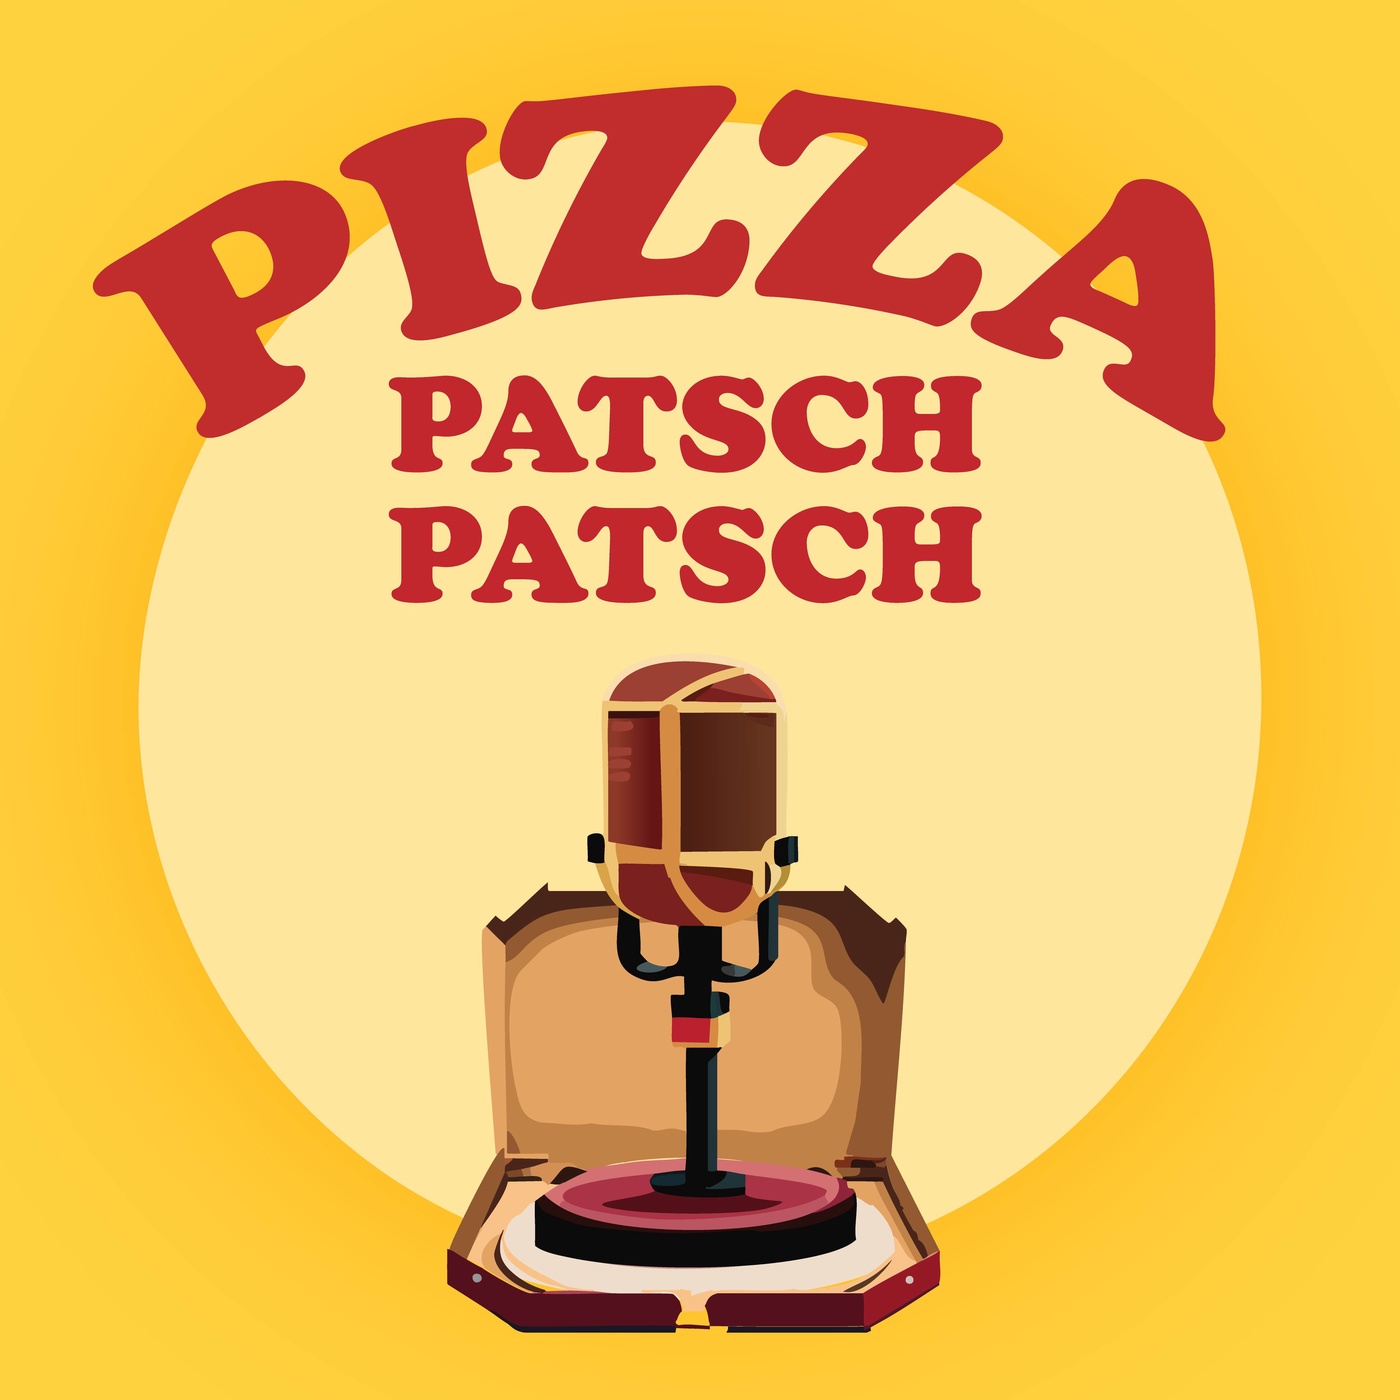 Pizza Patsch Patsch